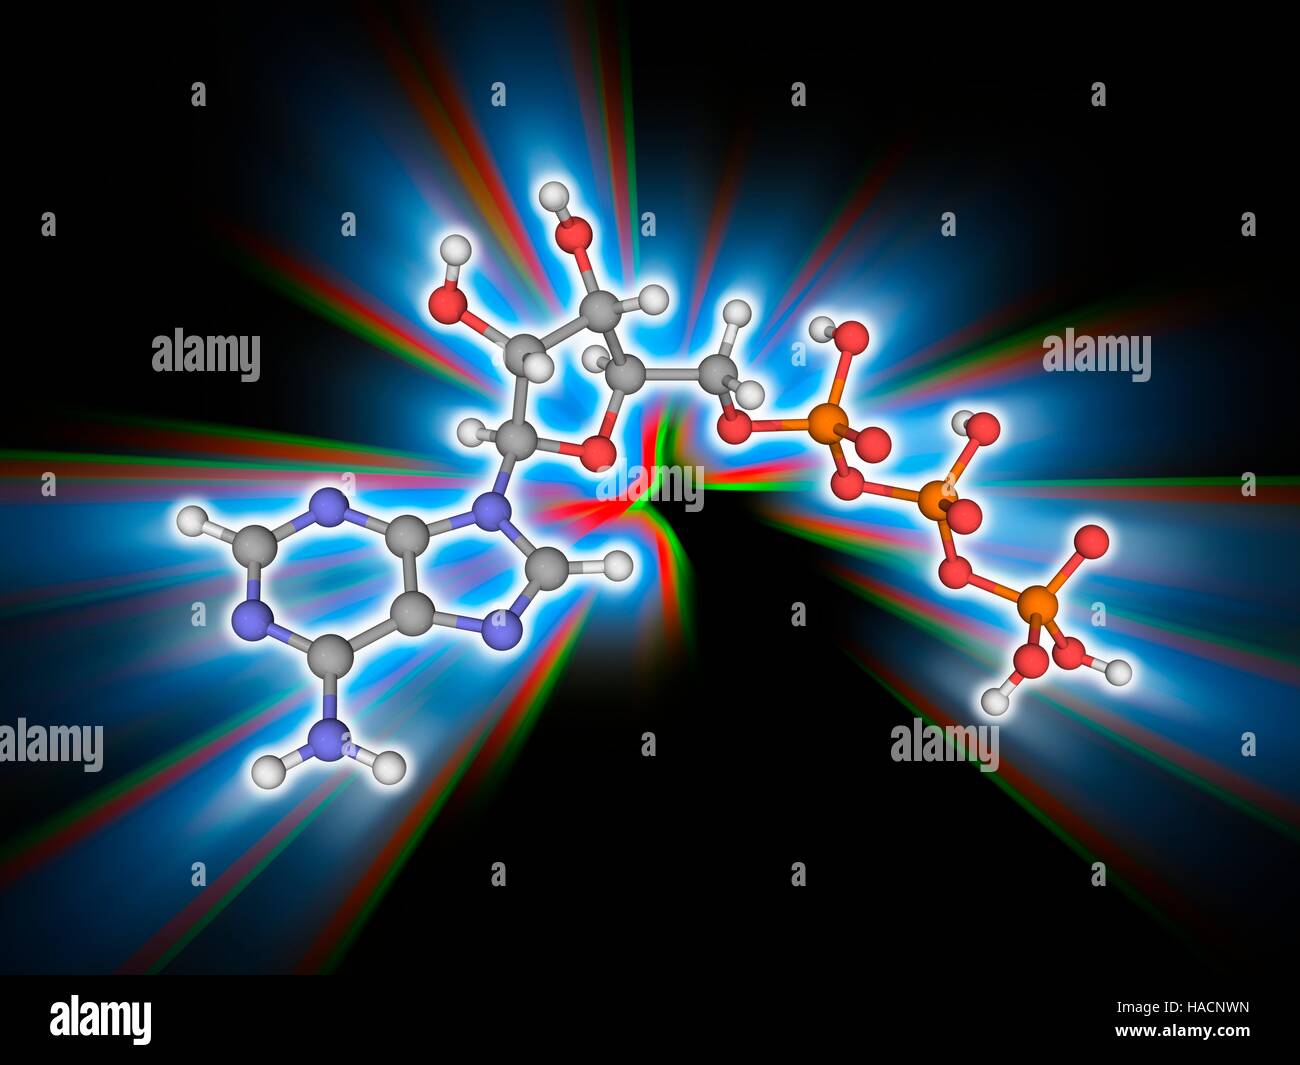 Il trifosfato di adenosina. Il modello molecolare del coenzima adenosina trifosfato (ATP, C10.H16.N5.O13.P3). Questa molecola è un vettore di energia metabolica nelle cellule. Gli atomi sono rappresentati da sfere e sono codificati a colori: carbonio (grigio), Idrogeno (bianco), Azoto (blu), Ossigeno (rosso) e il fosforo (arancione). Illustrazione. Foto Stock